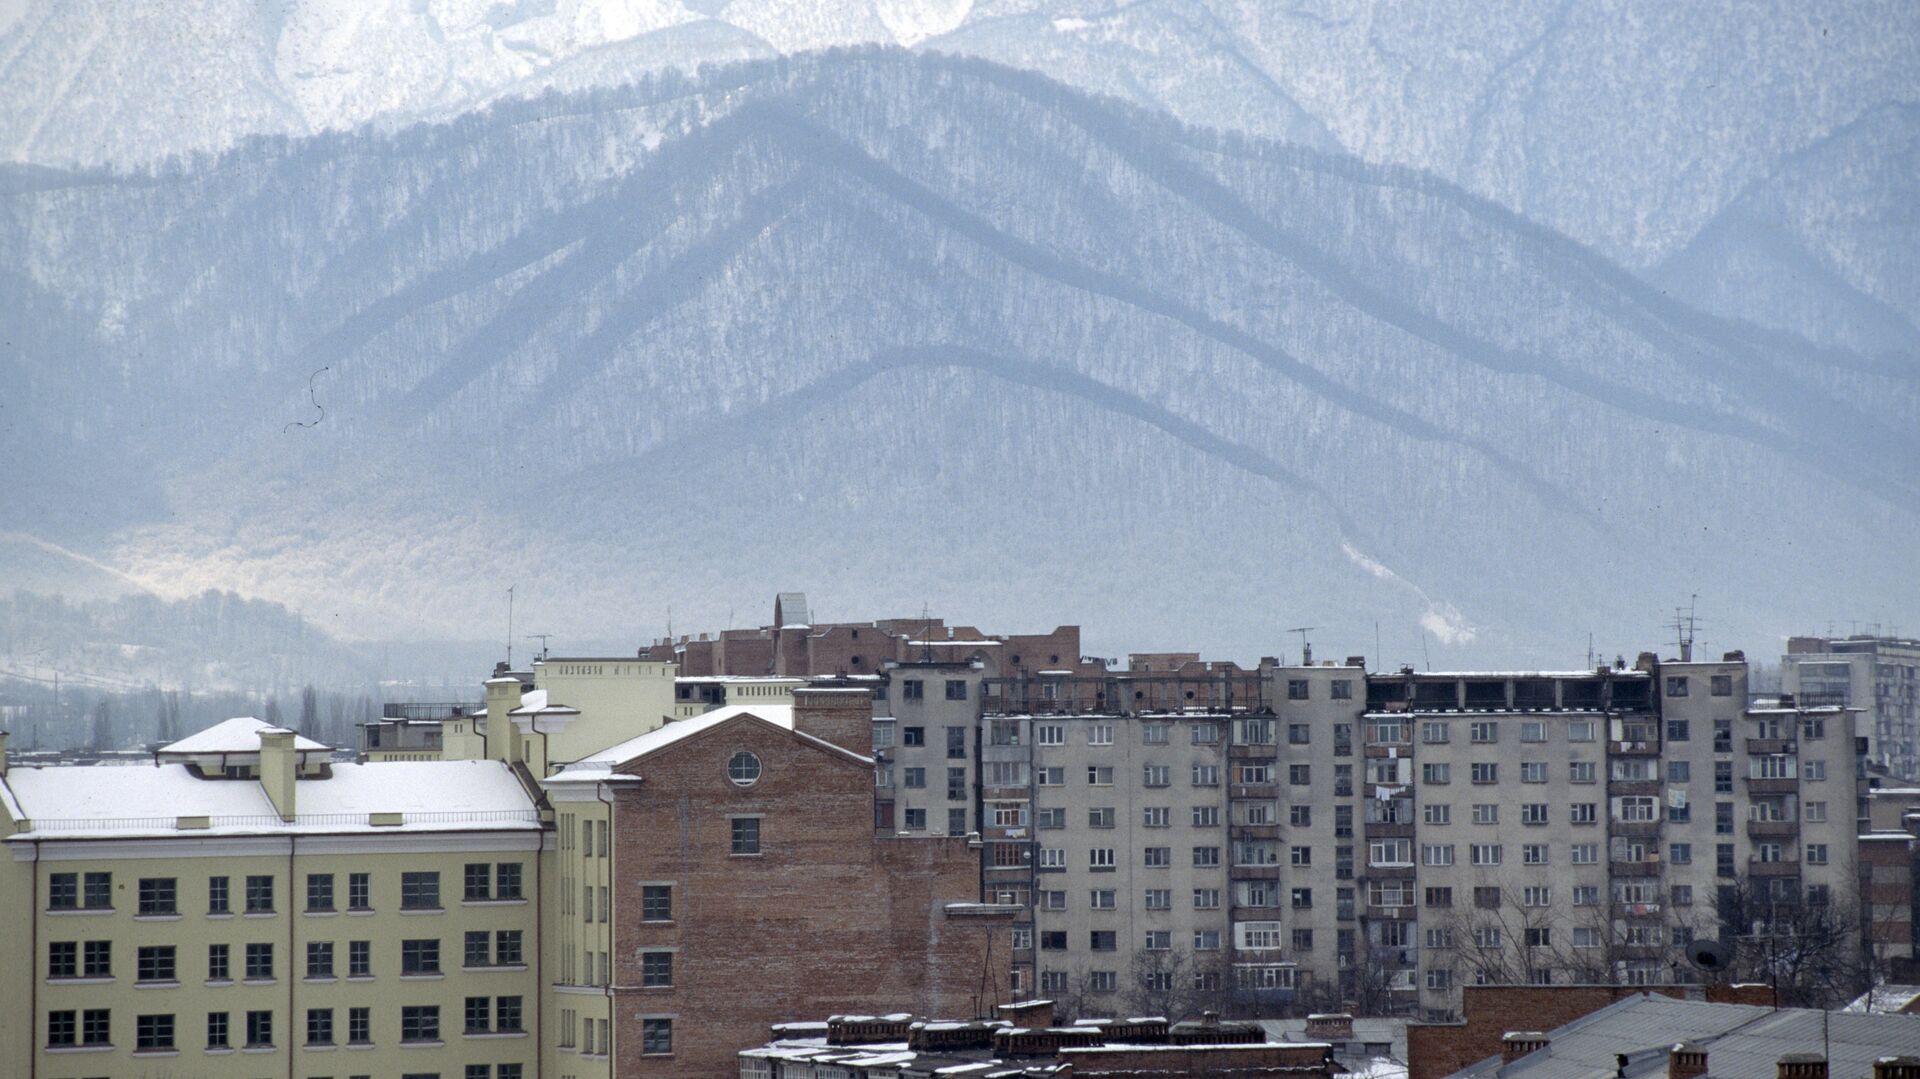 В Северной Осетии 16 поселений отрезало от дорог после схода селя